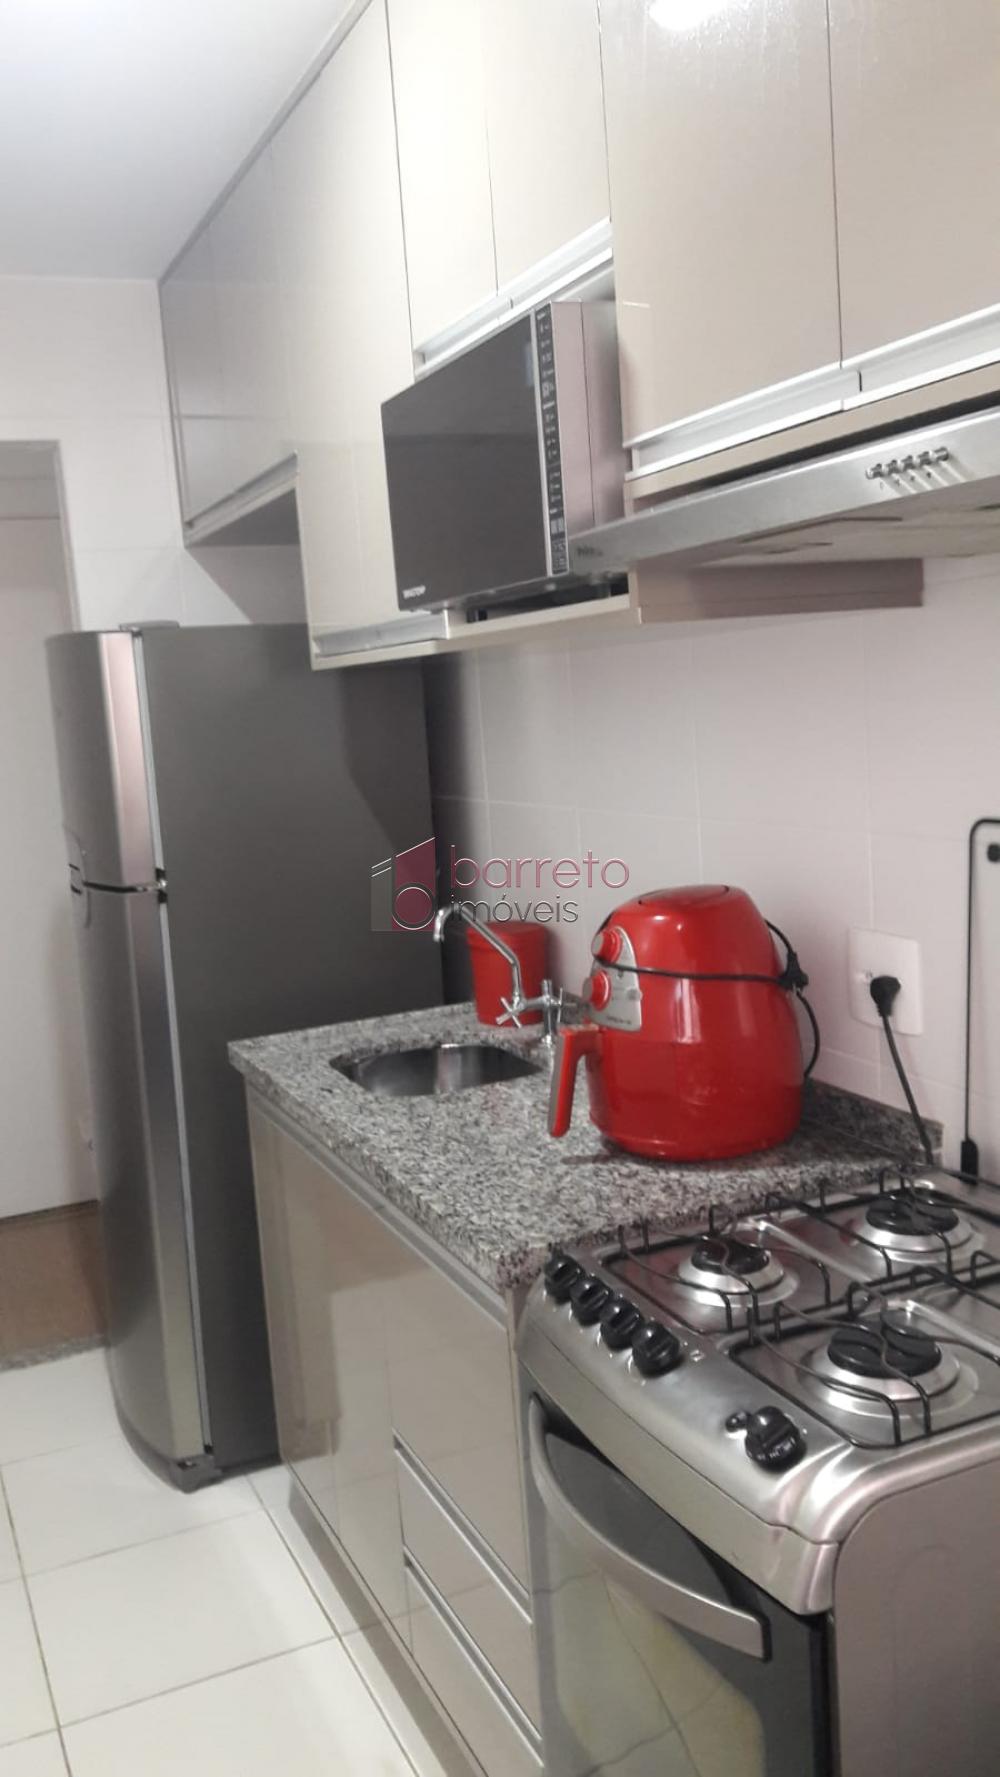 Alugar Apartamento / Padrão em Jundiaí R$ 2.800,00 - Foto 7